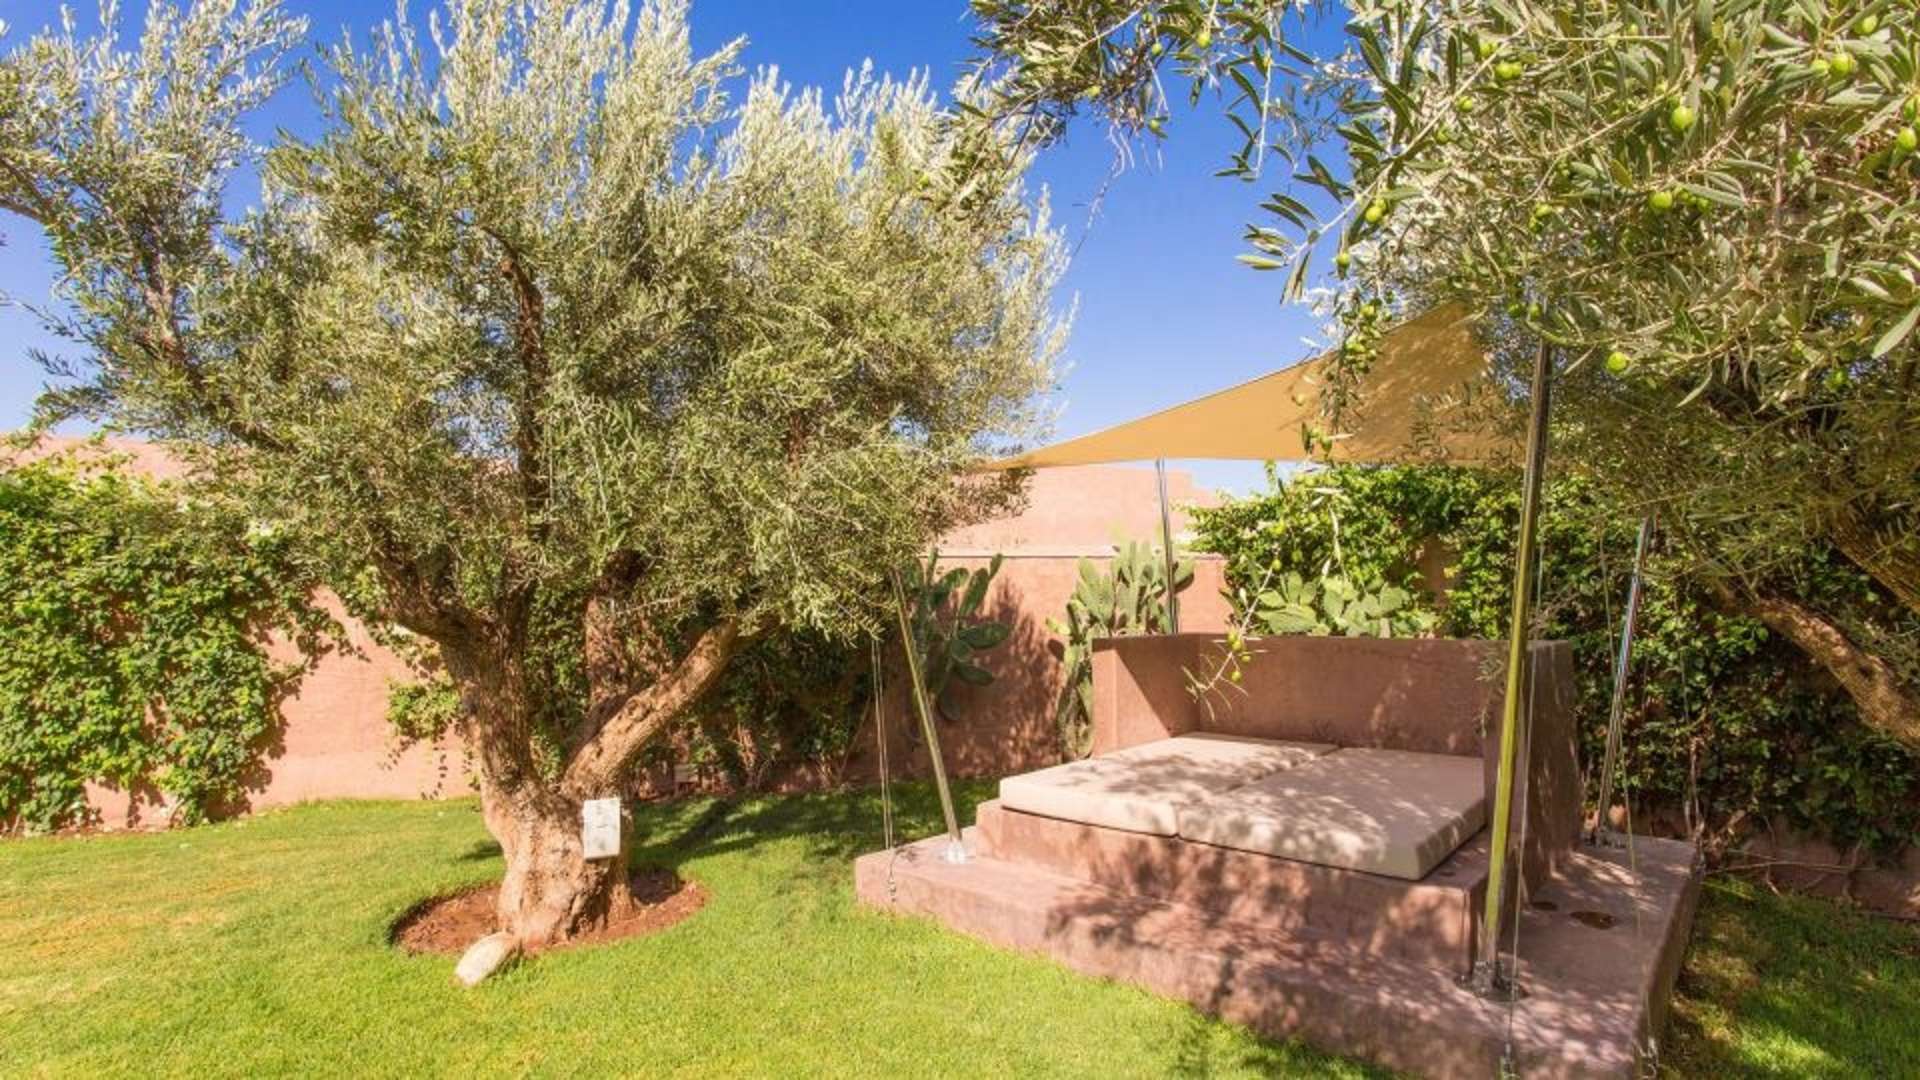 Location de vacances,Villa,Villa de luxe d’architecte de plain-pied pour 6 personnes. Domaine privé sécurisé avec services,Marrakech,Golf Royal Palm